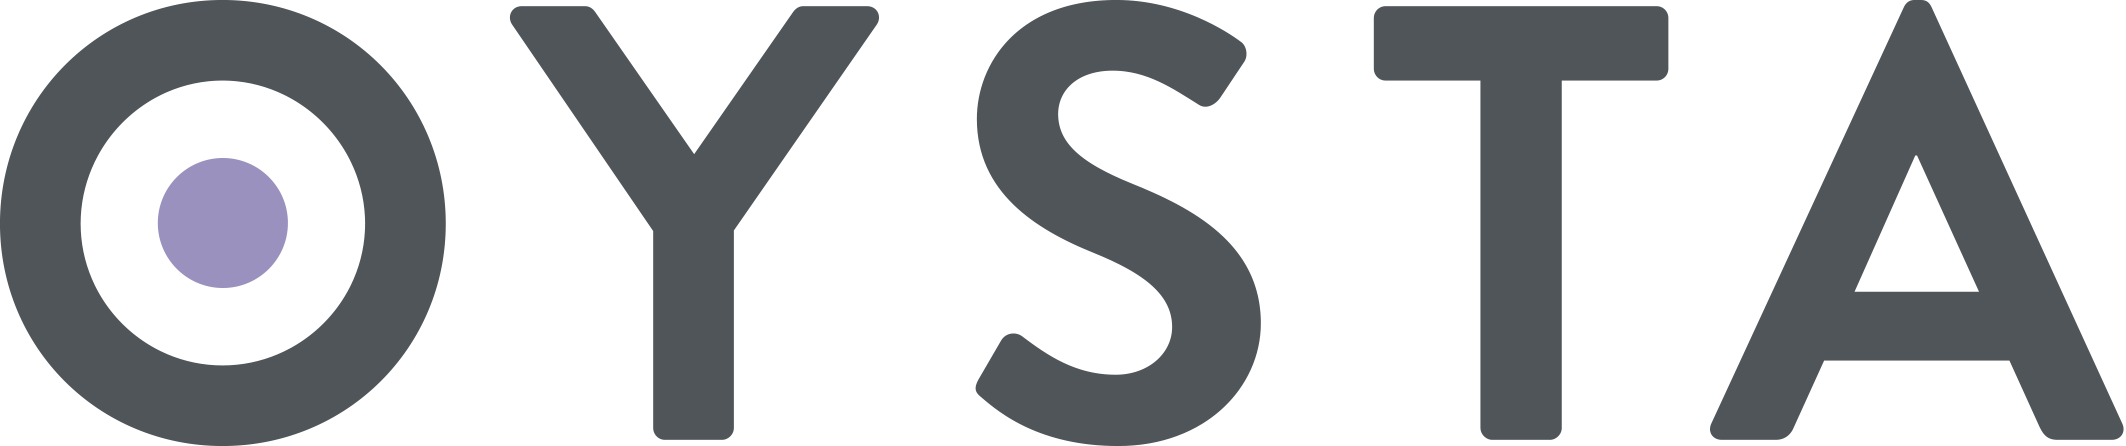 OYSTA Logo